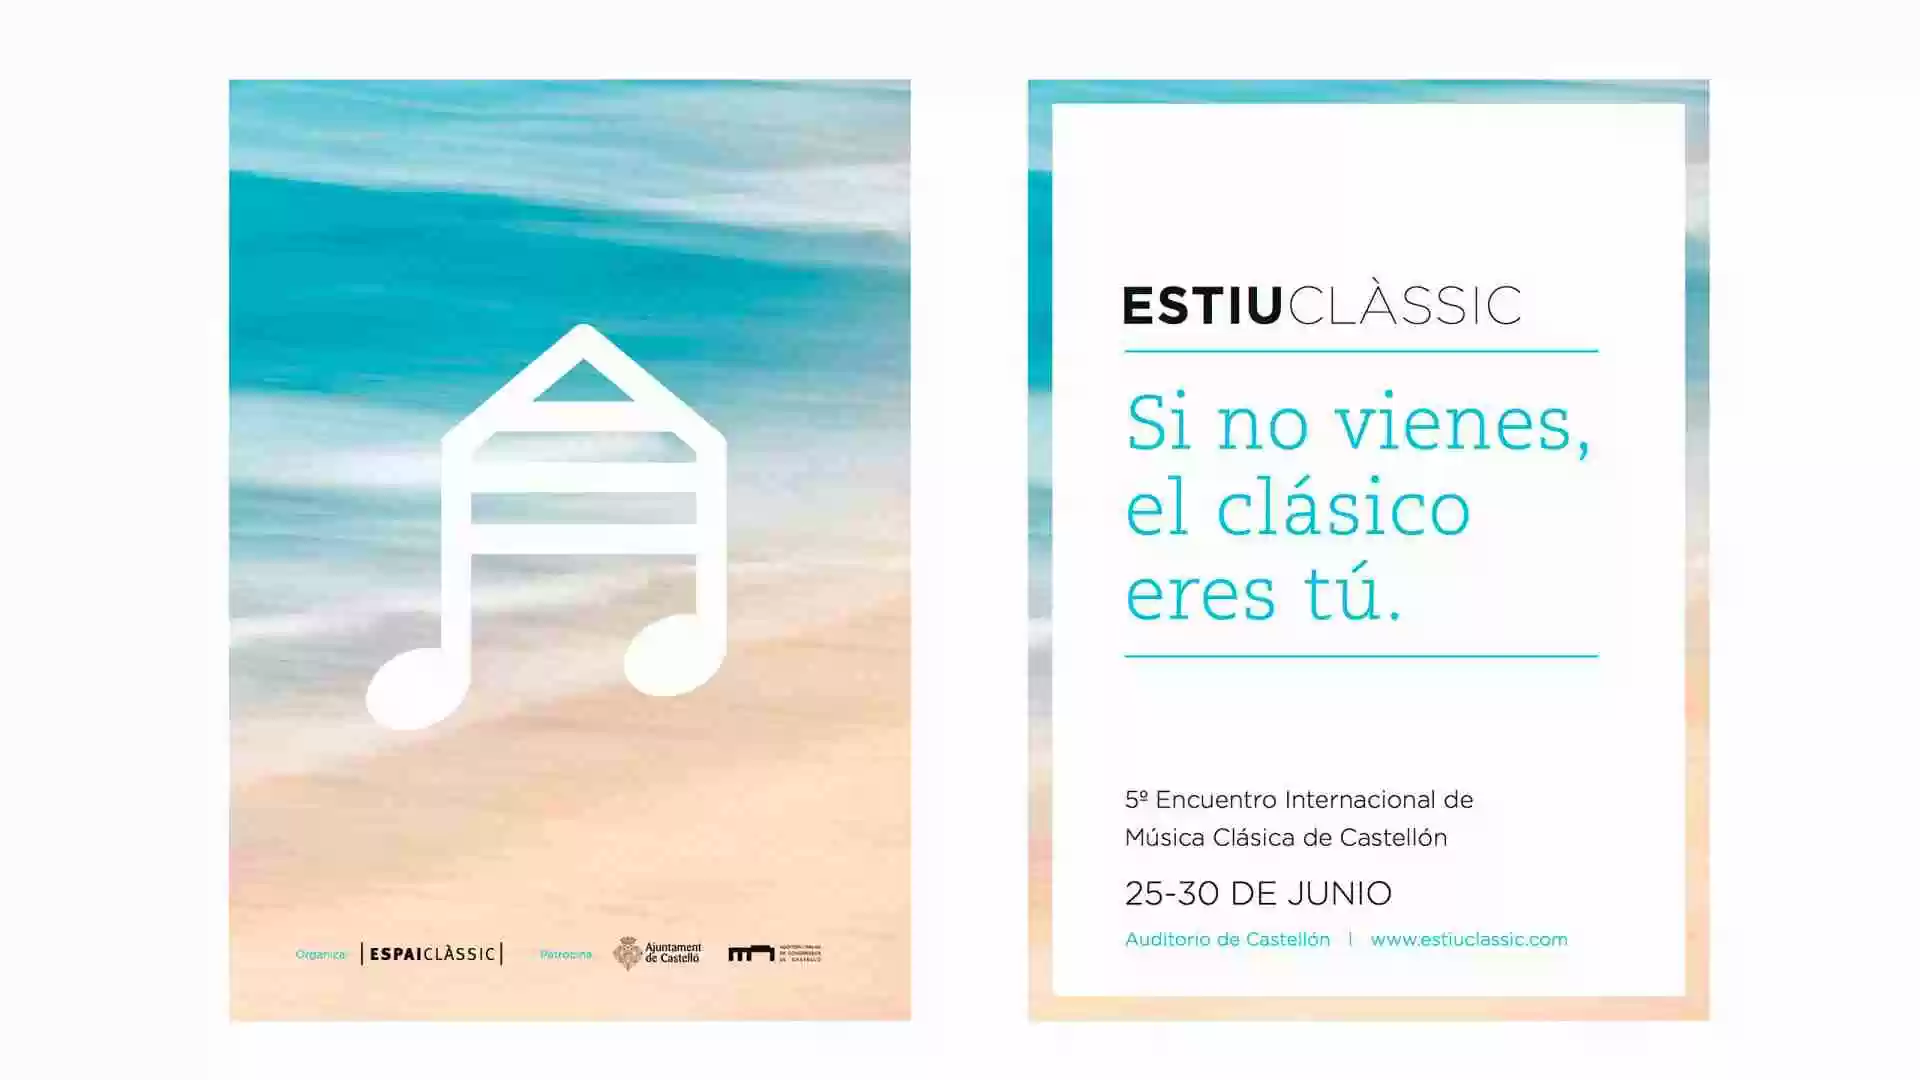 Espài Classic - Estiu Classic